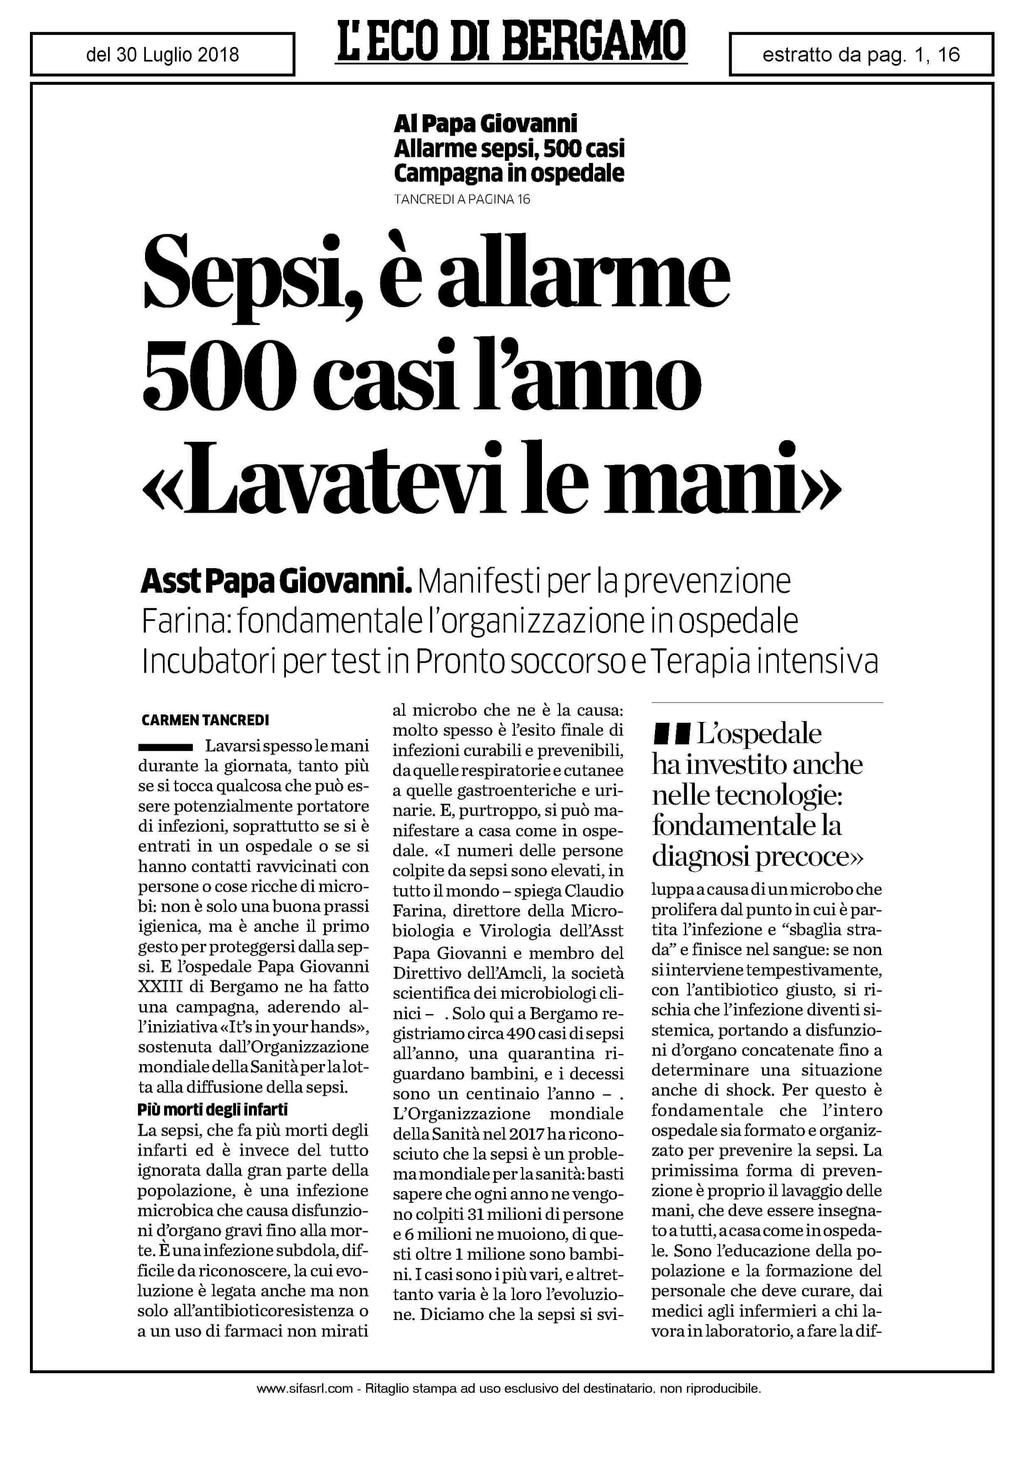 Al Papa Giovanni Allarme sepsi, 500 casi Campagna in ospedale TANCREDIAPACINA16 Sepsi, è allarme 500 casi Fanno «Lavatevi le mani» Asst Papa Giovanni.